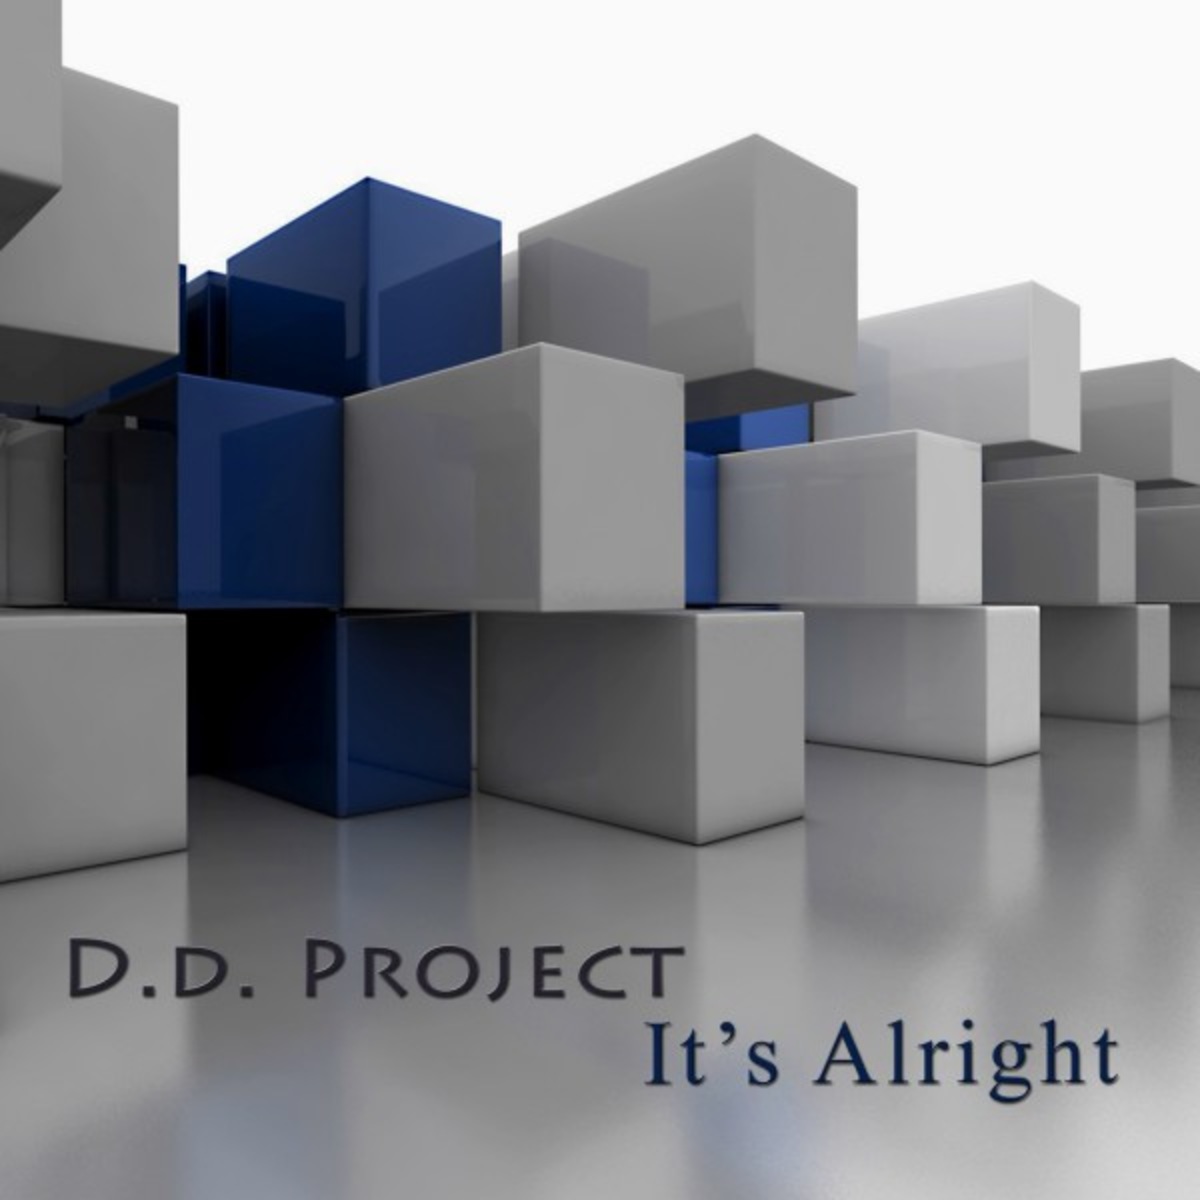 D.D. Project - It's Alright / Lounge Bazar